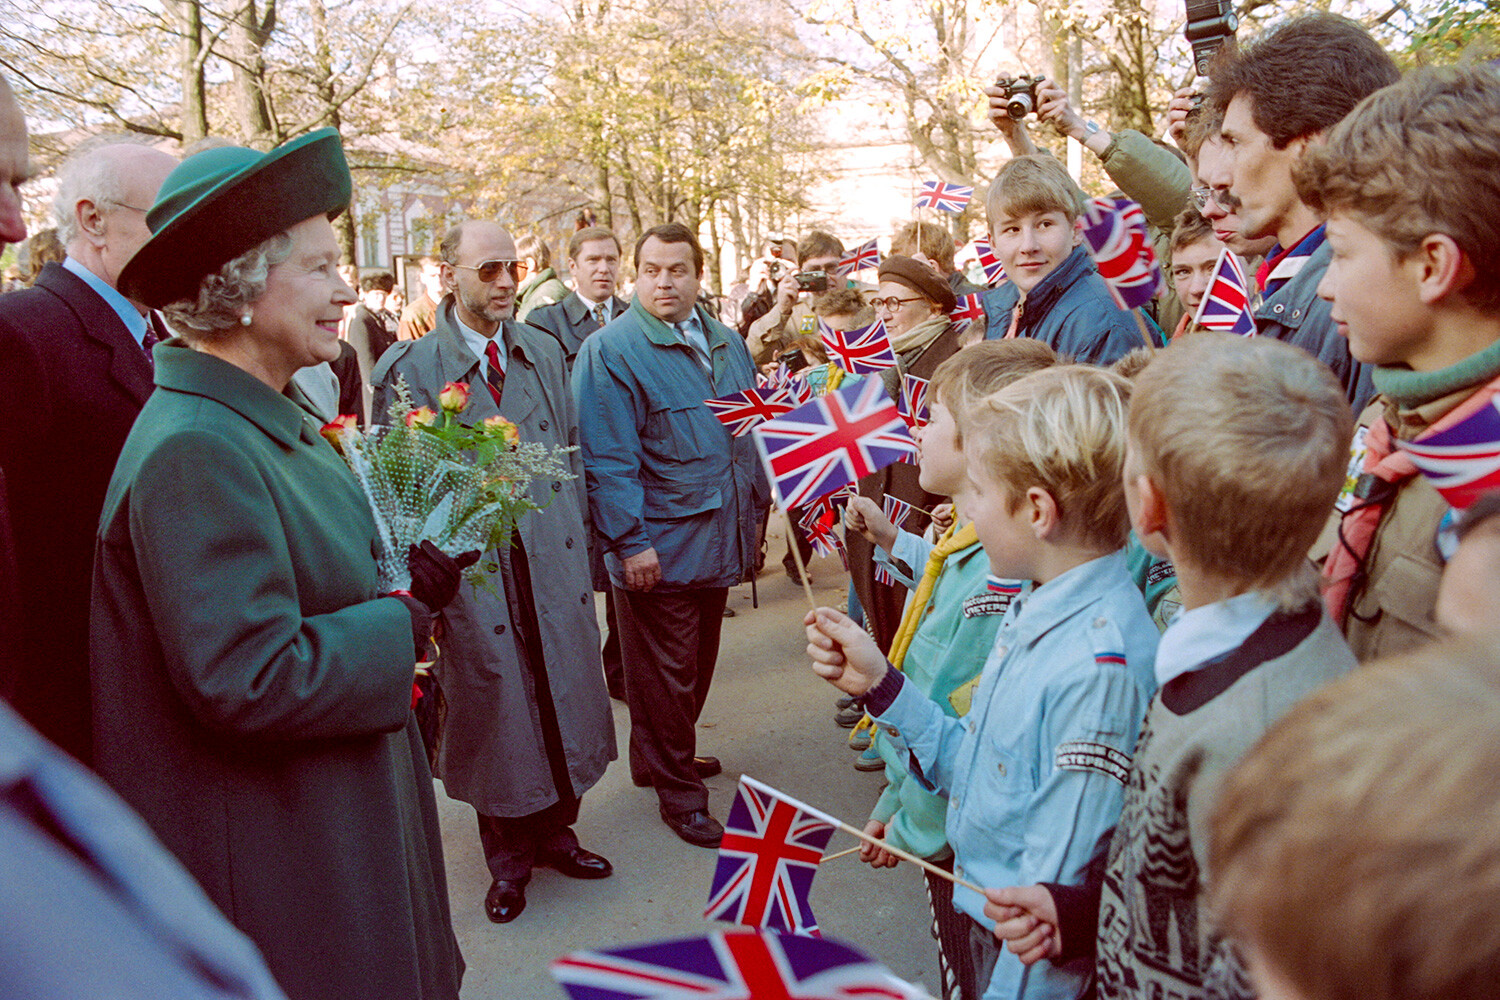 Britanska kraljica Elizabeta II. se 20. oktobra 1994 med obiskom Sankt Peterburga sreča z ruskimi šolarji. Kraljica je na štiridnevnem zgodovinskem obisku v Rusiji